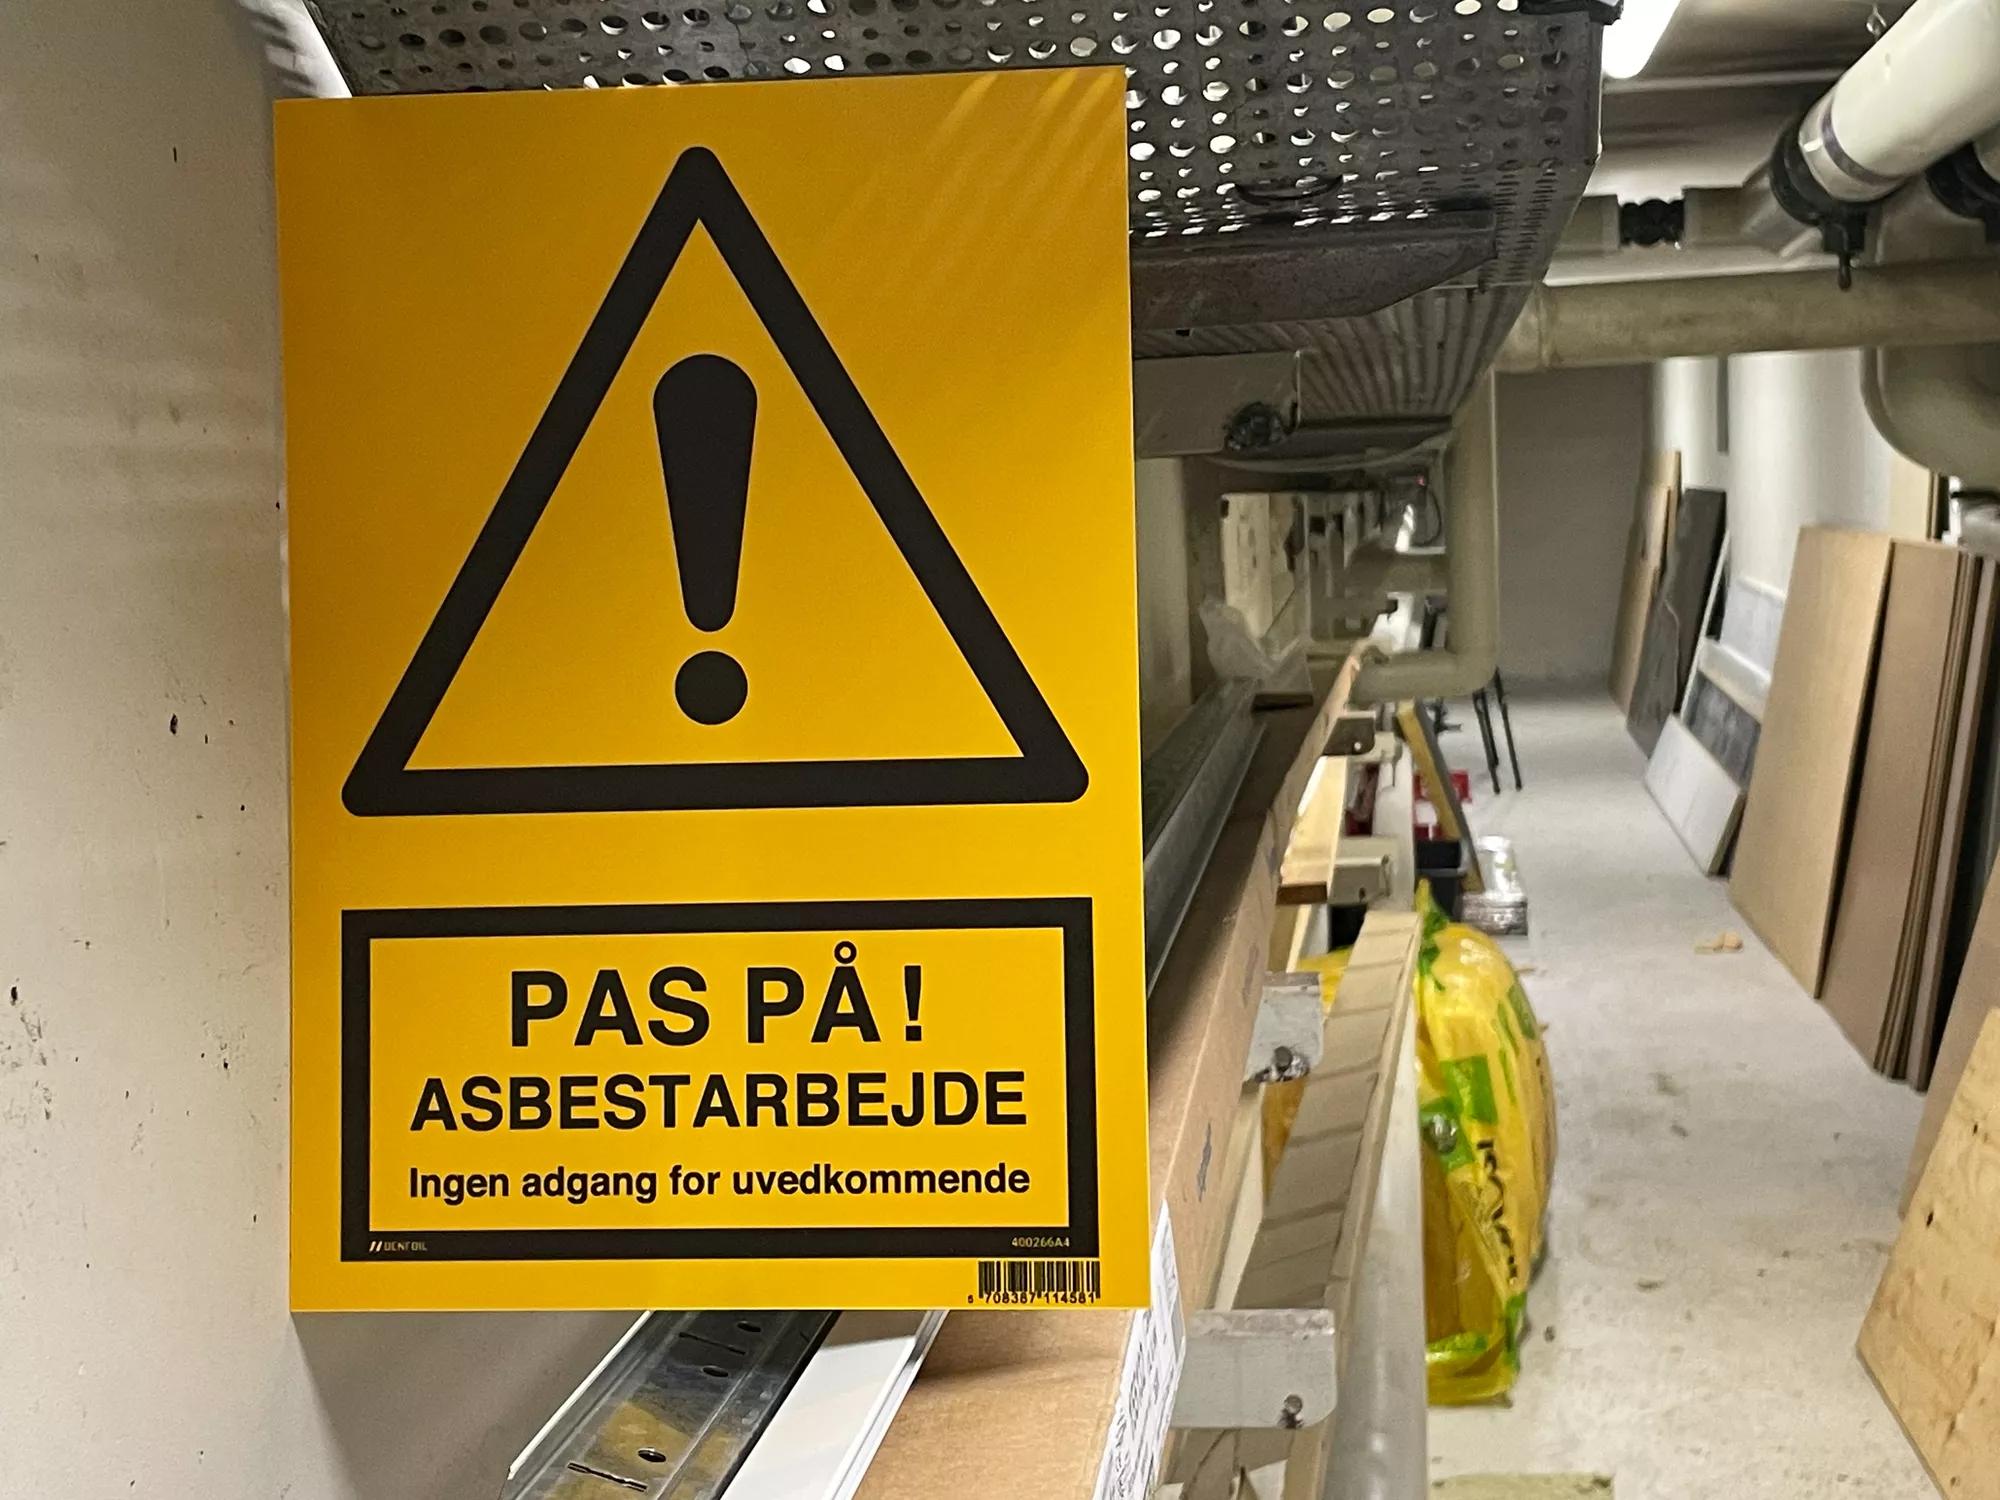 Advarselsskilt som viser at der er farligt materiale på byggepladsen, f.eks. asbest